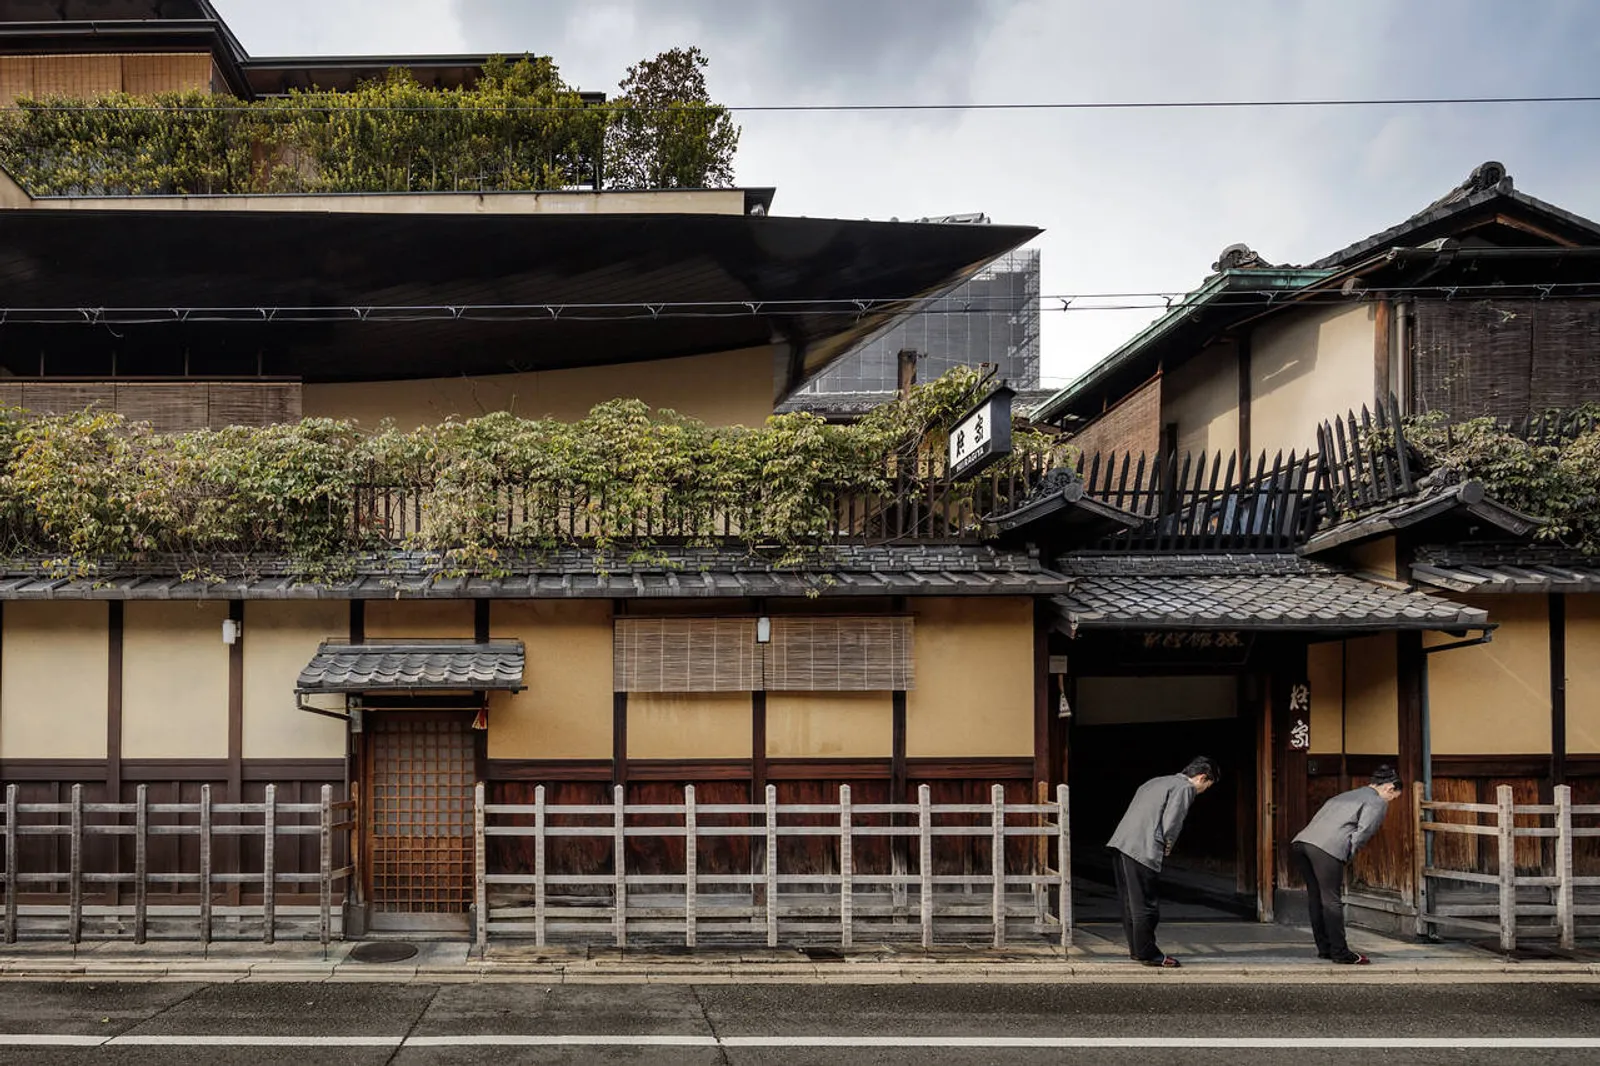 Rekomendasi 7 Ryokan Terbaik di Kyoto yang Kental Budaya Jepang